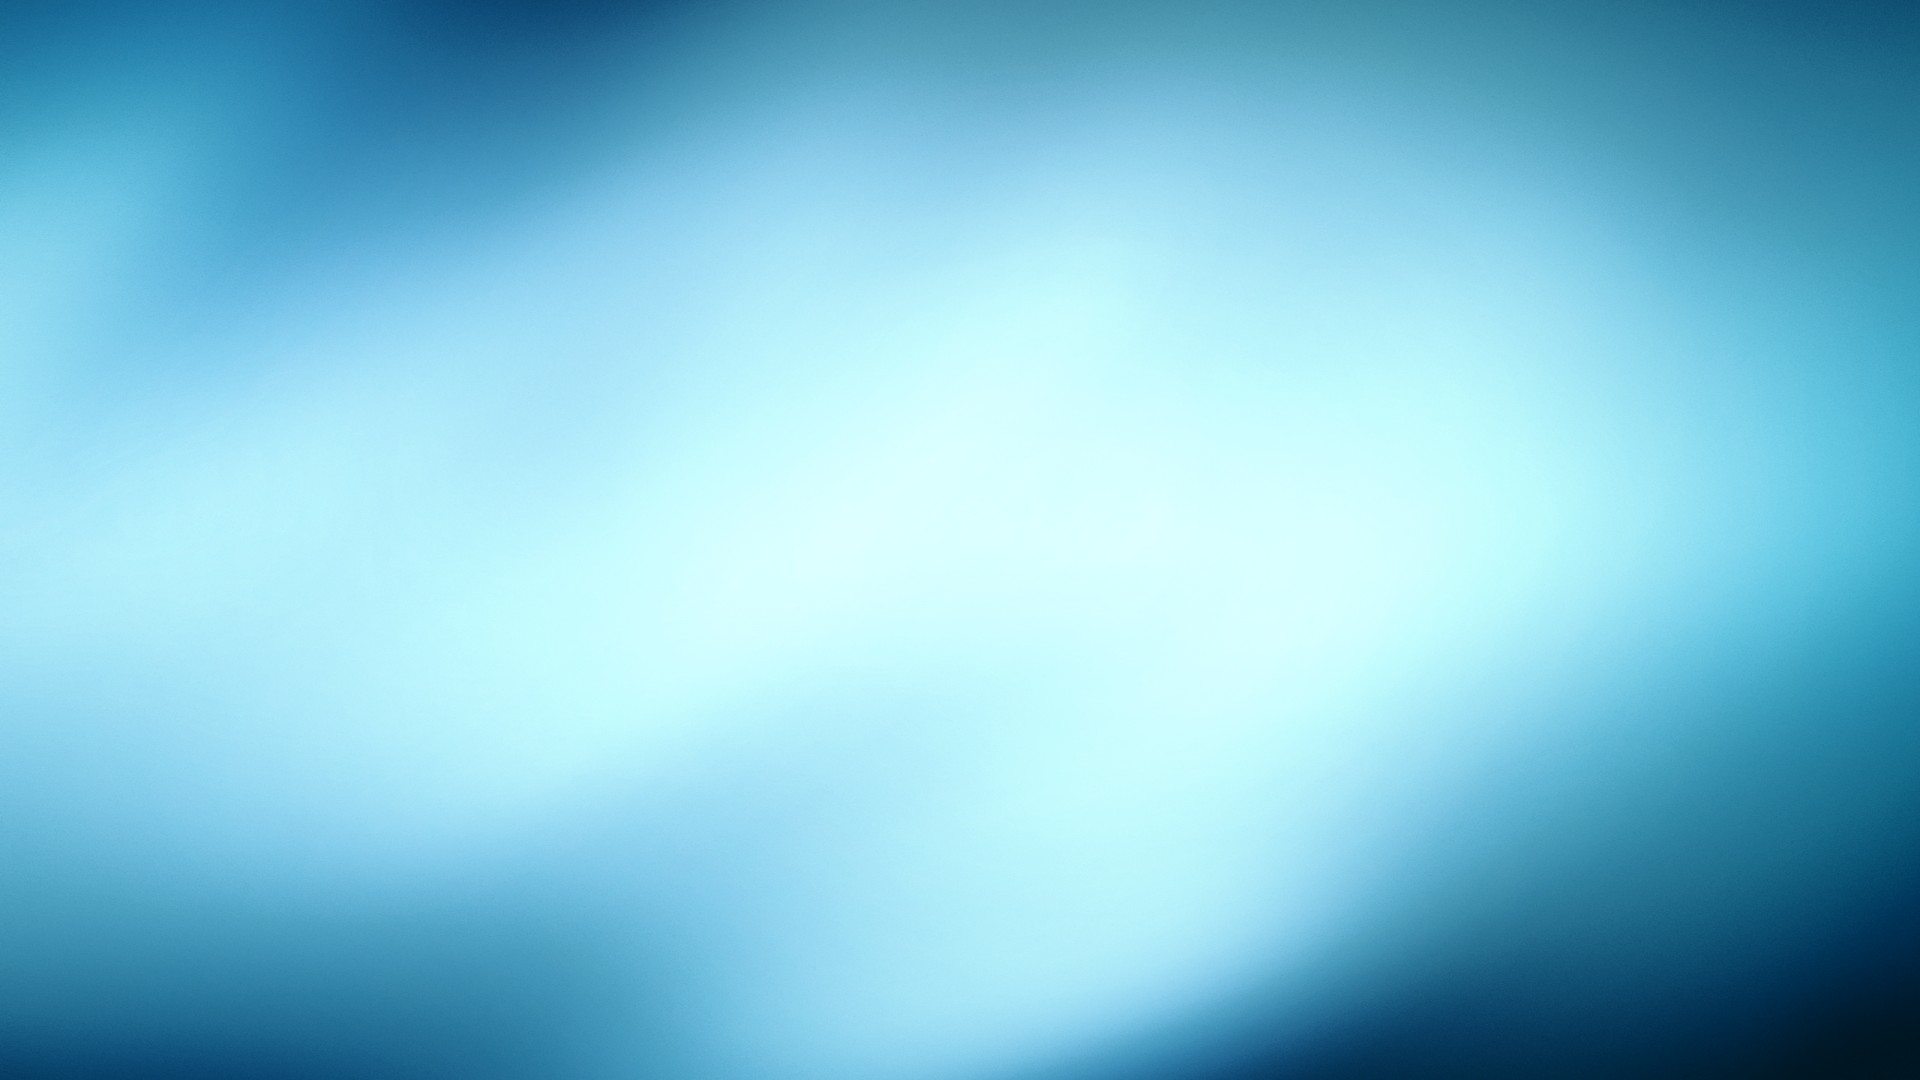 블루 벽지 b & q,푸른,하늘,낮,아쿠아,터키 옥